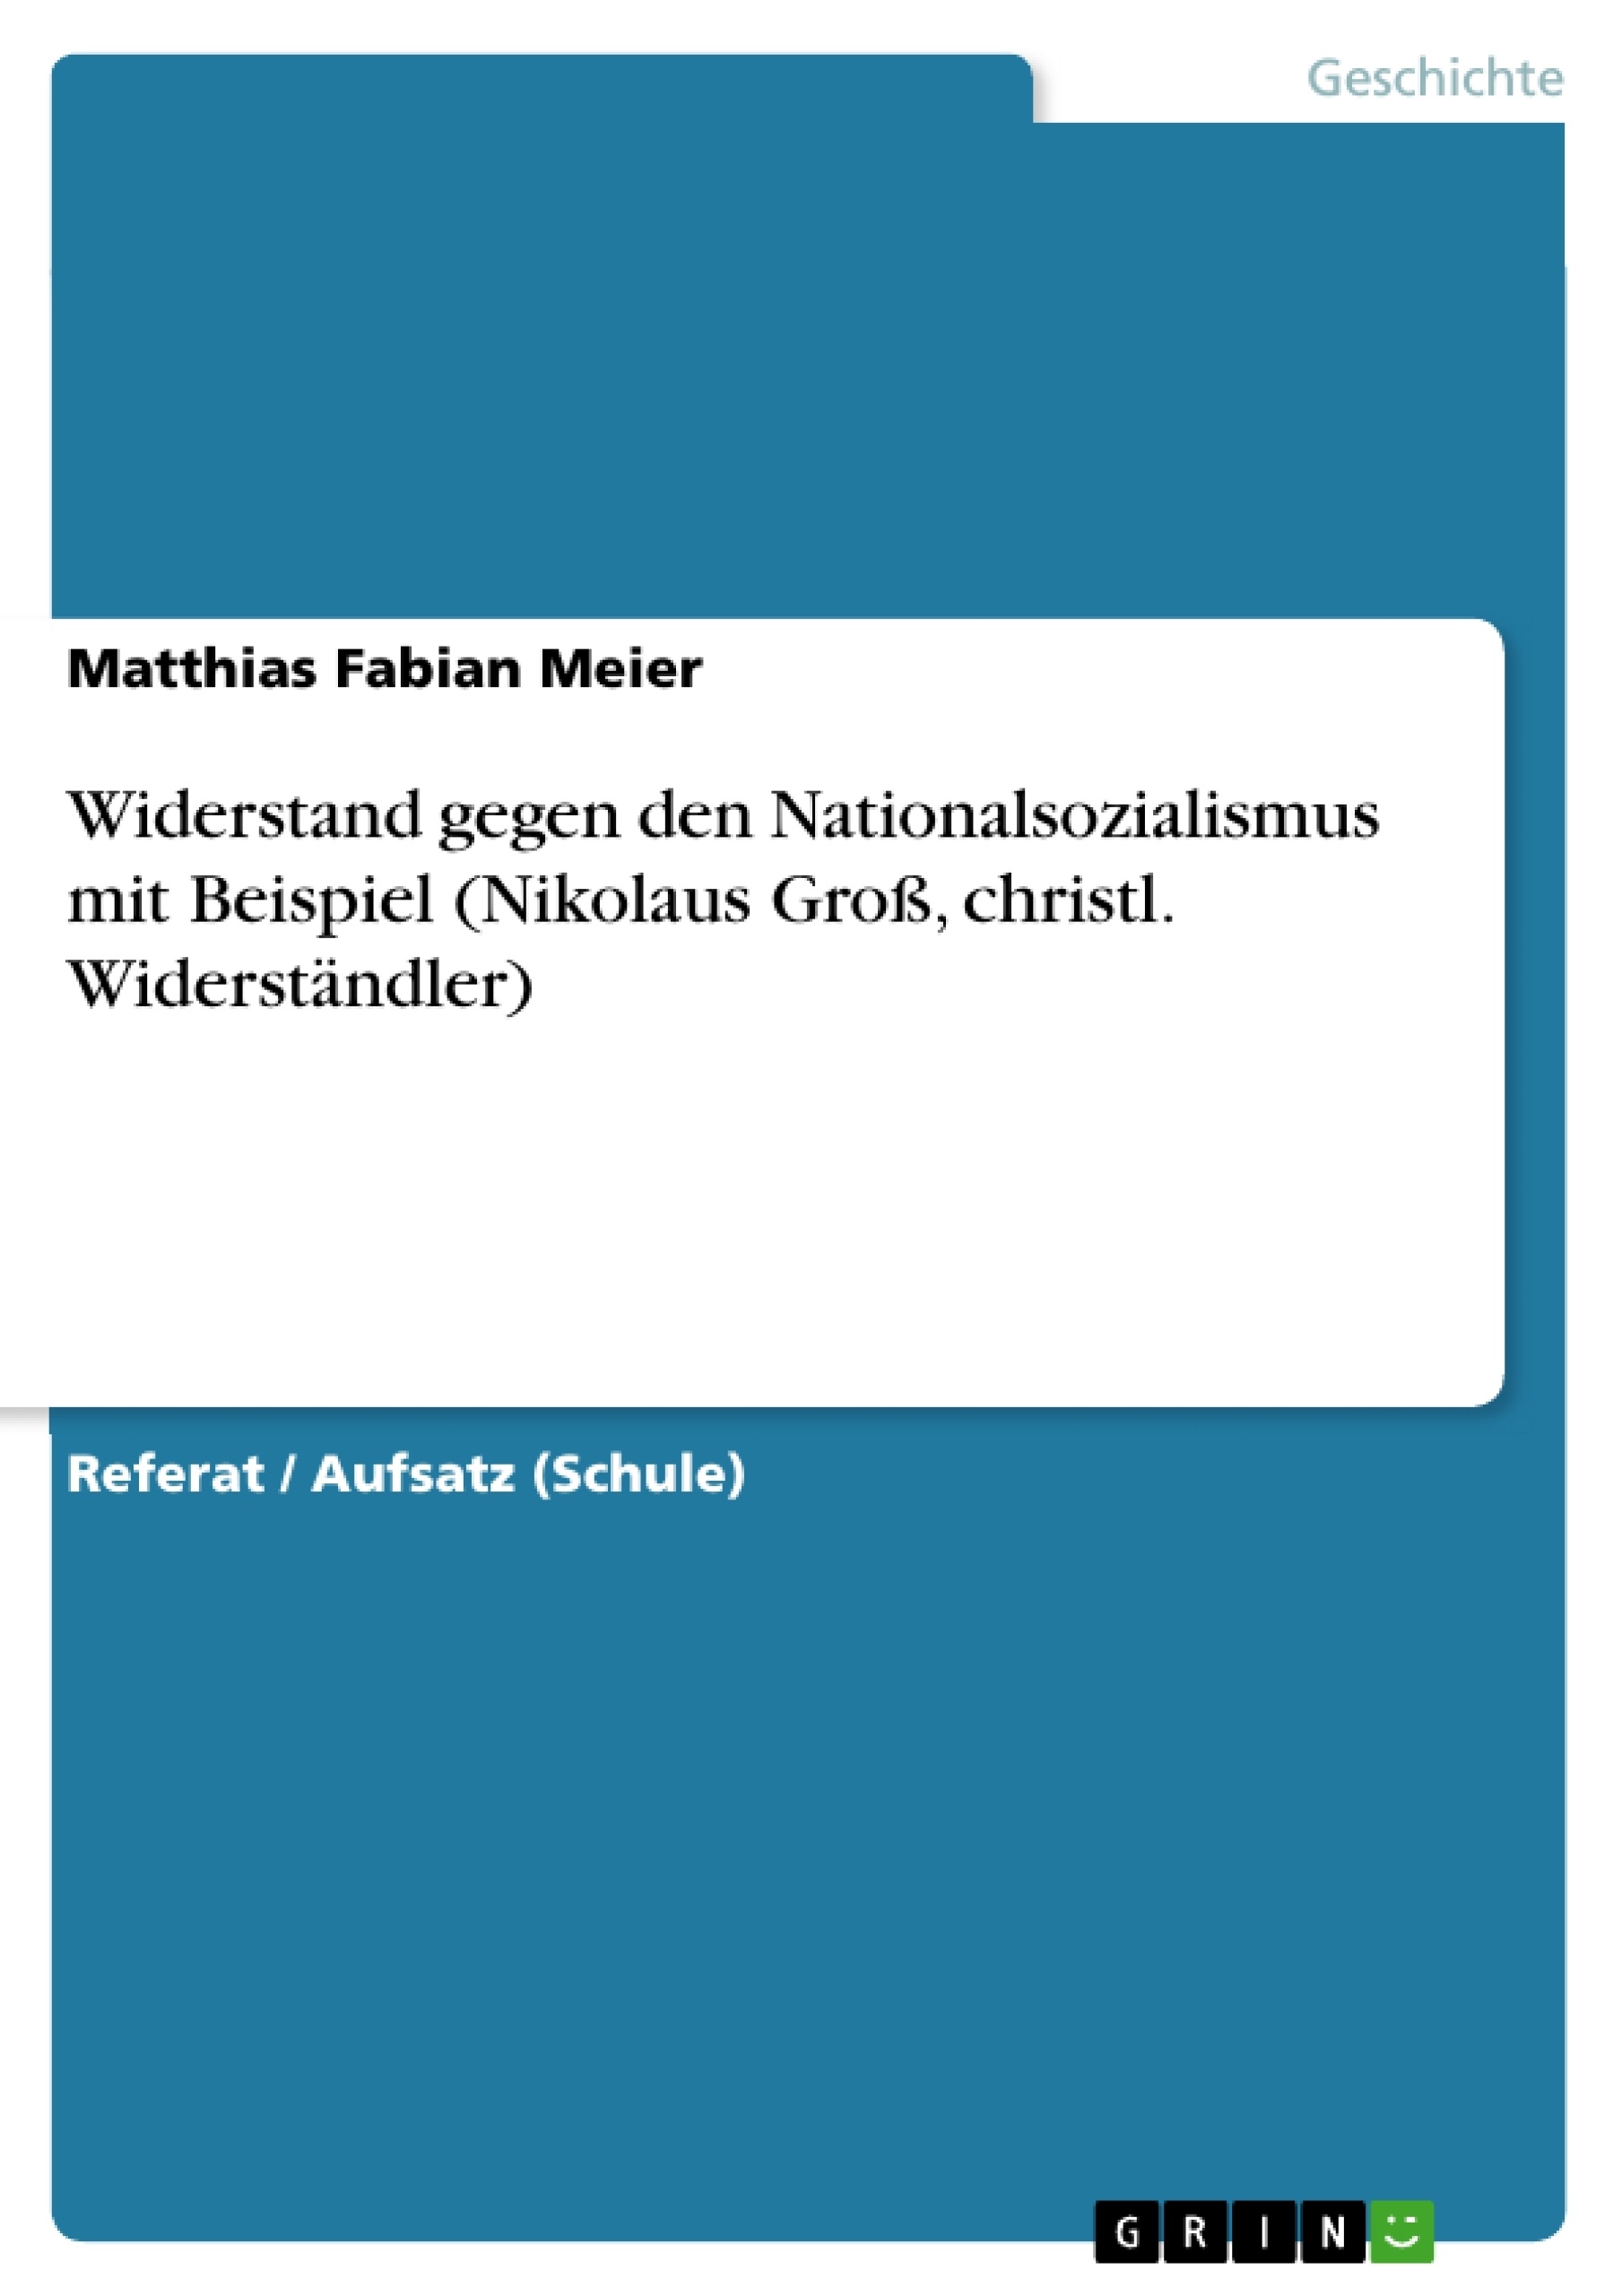 Title: Widerstand gegen den Nationalsozialismus mit Beispiel (Nikolaus Groß, christl. Widerständler)